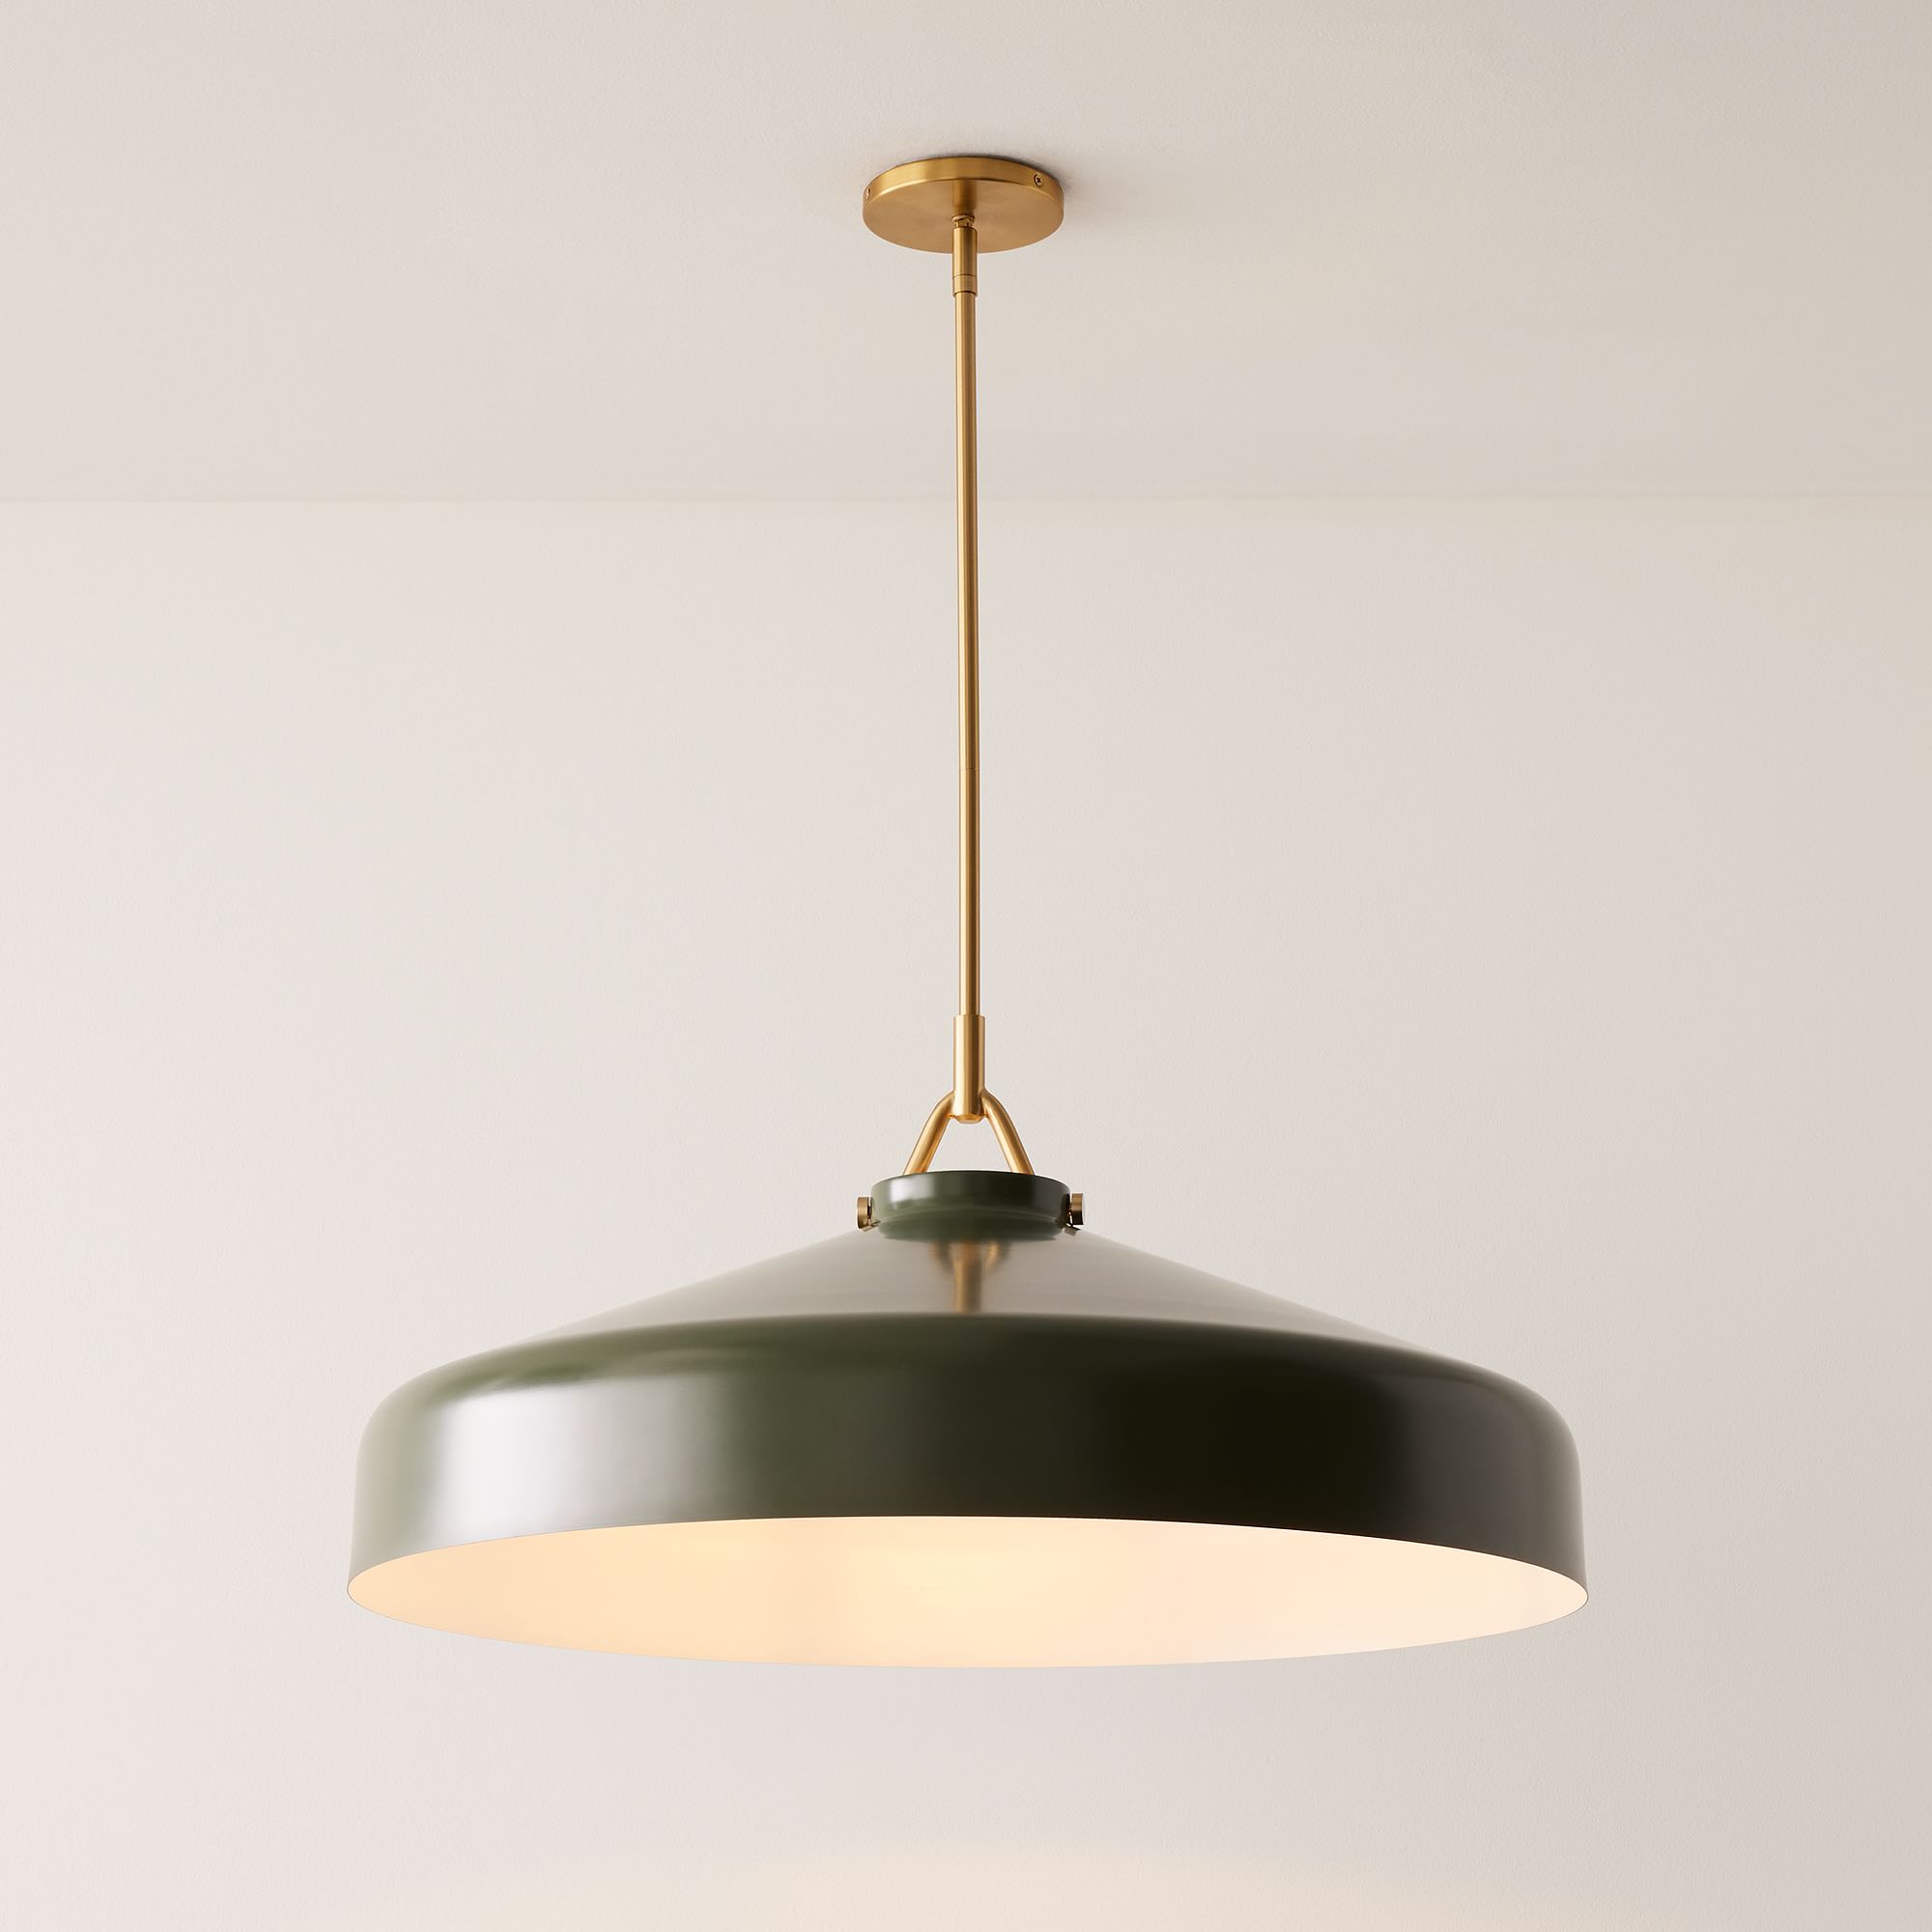 VersaGlow Premium Metal Pendant Light - Elegant Multi-Functional Design with Premium Material for Dining Room